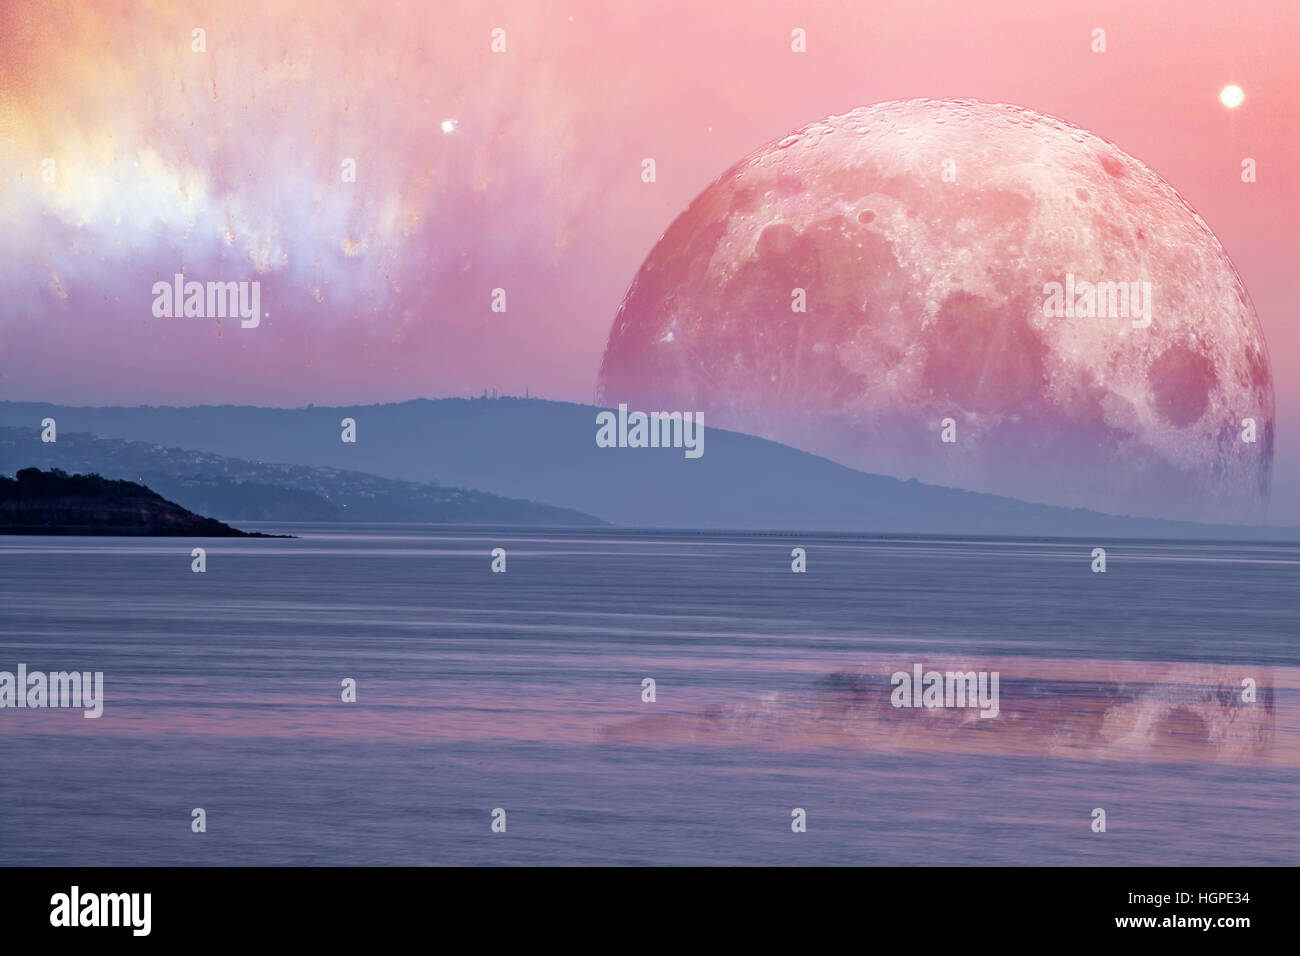 Landschaft von einem fremden Planeten - riesige rosa Mond spiegelt sich in ruhigem Meerwasser. Elemente des Bildes sind von der NASA eingerichtet. Stockfoto